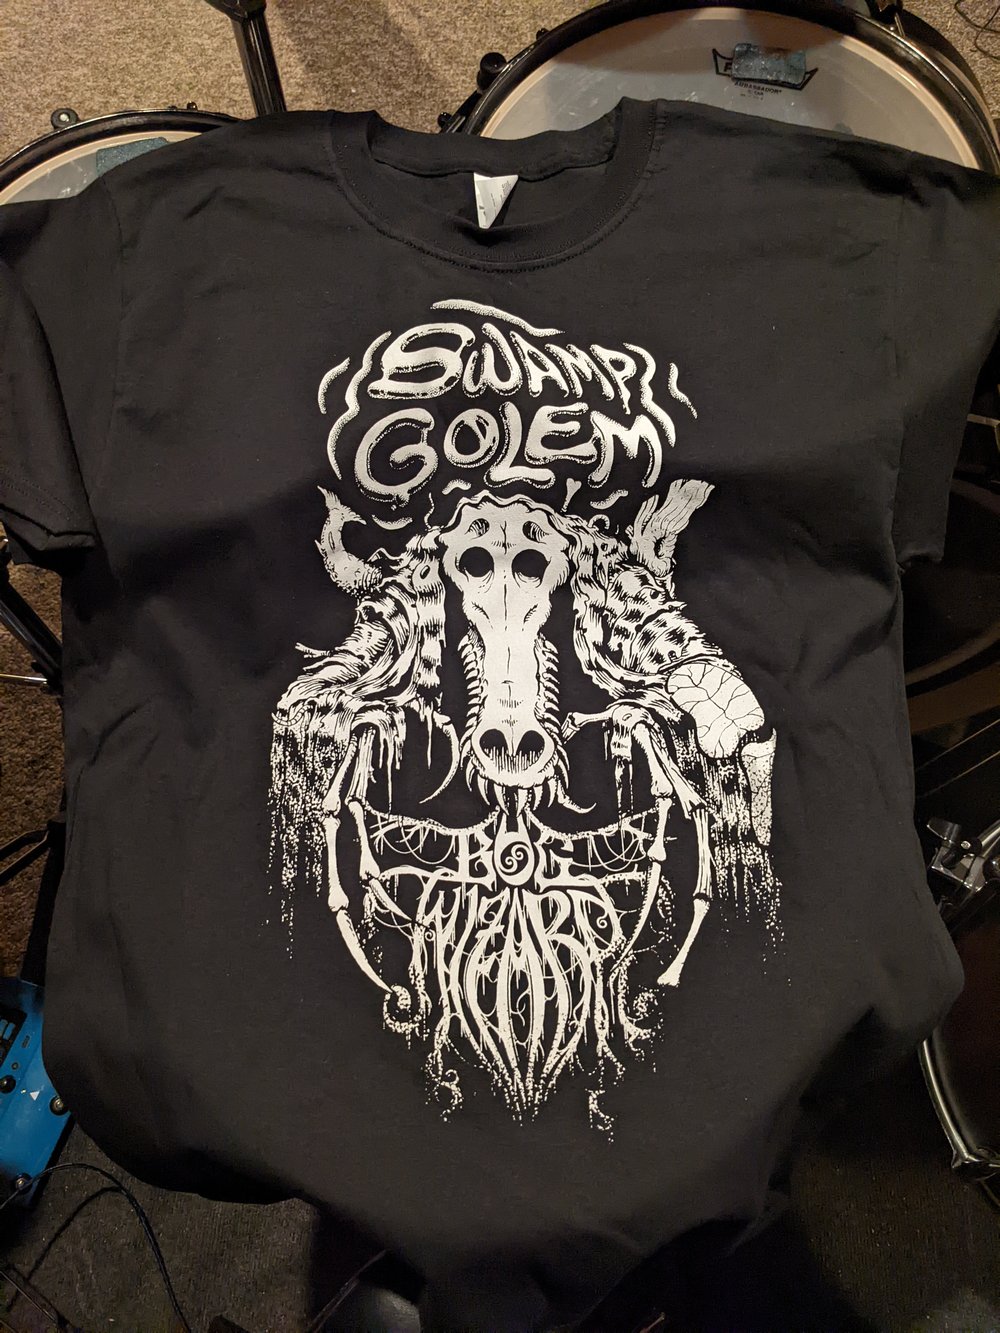 Swamp Golem T Shirt